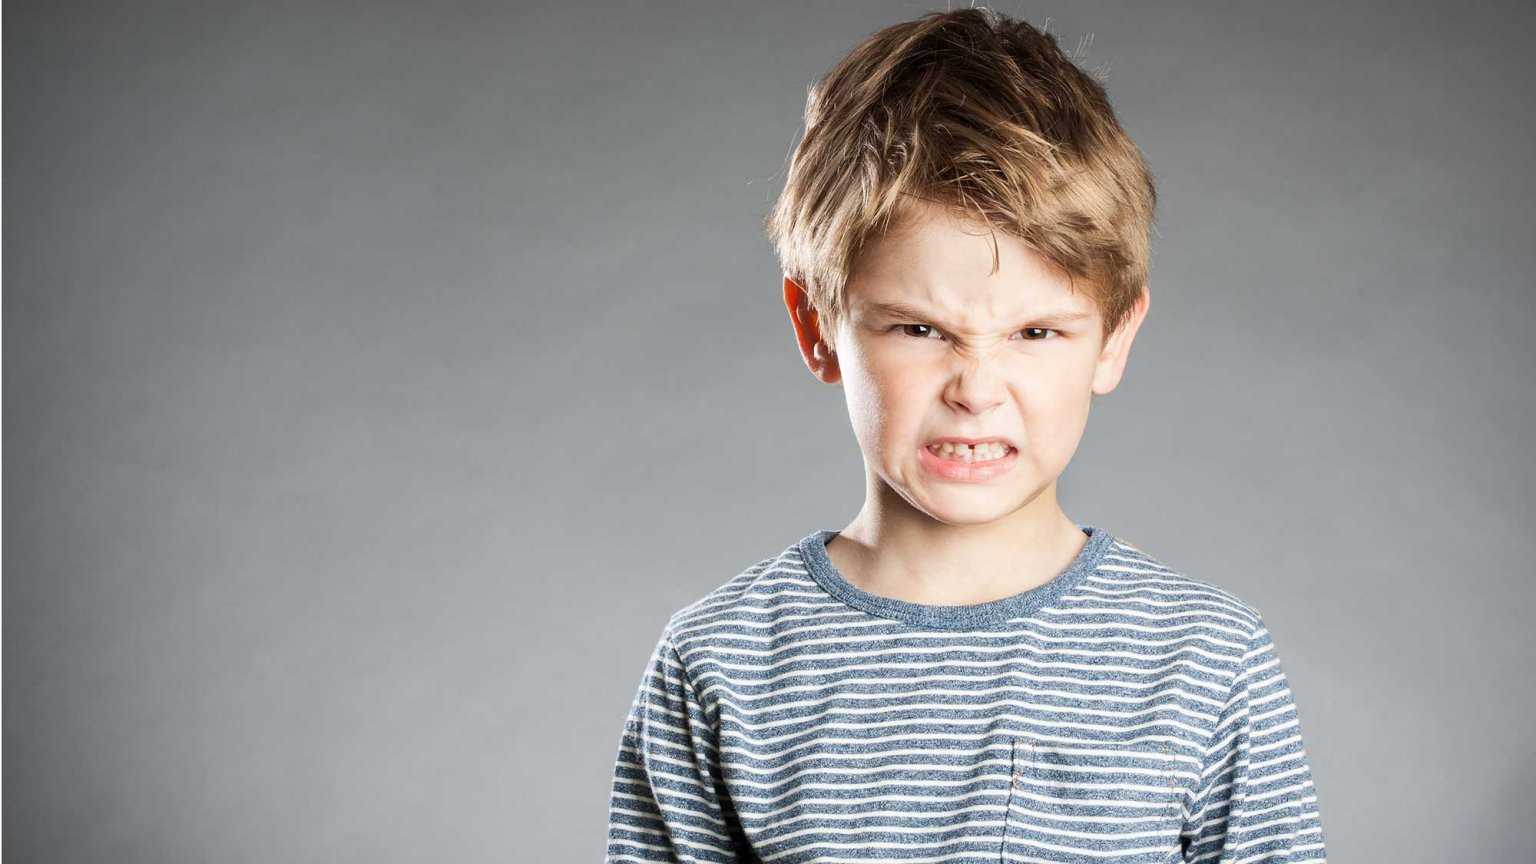 Как не срываться на ребенка и сохранять самообладание помогут своевременные рекомендации от психолога Родителям рекомендуется преподносить свою злость в виде юмора вместо повышенного тона можно порычать